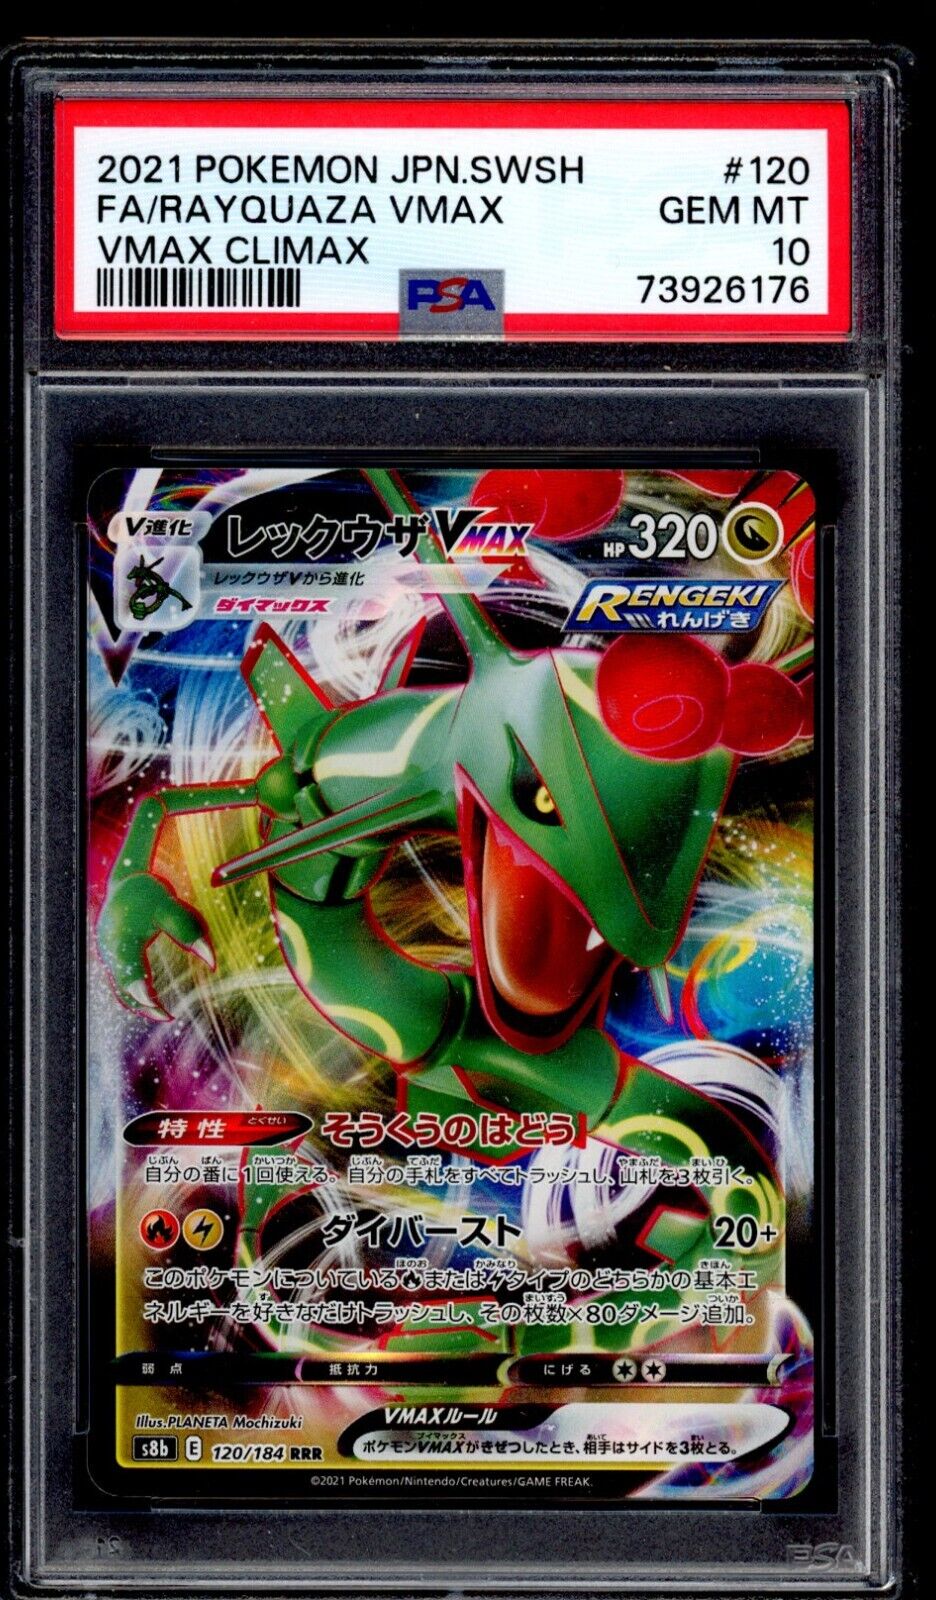 PSA 10 Rayquaza 2021 Pokemon Card 120/184 Vmax Climax